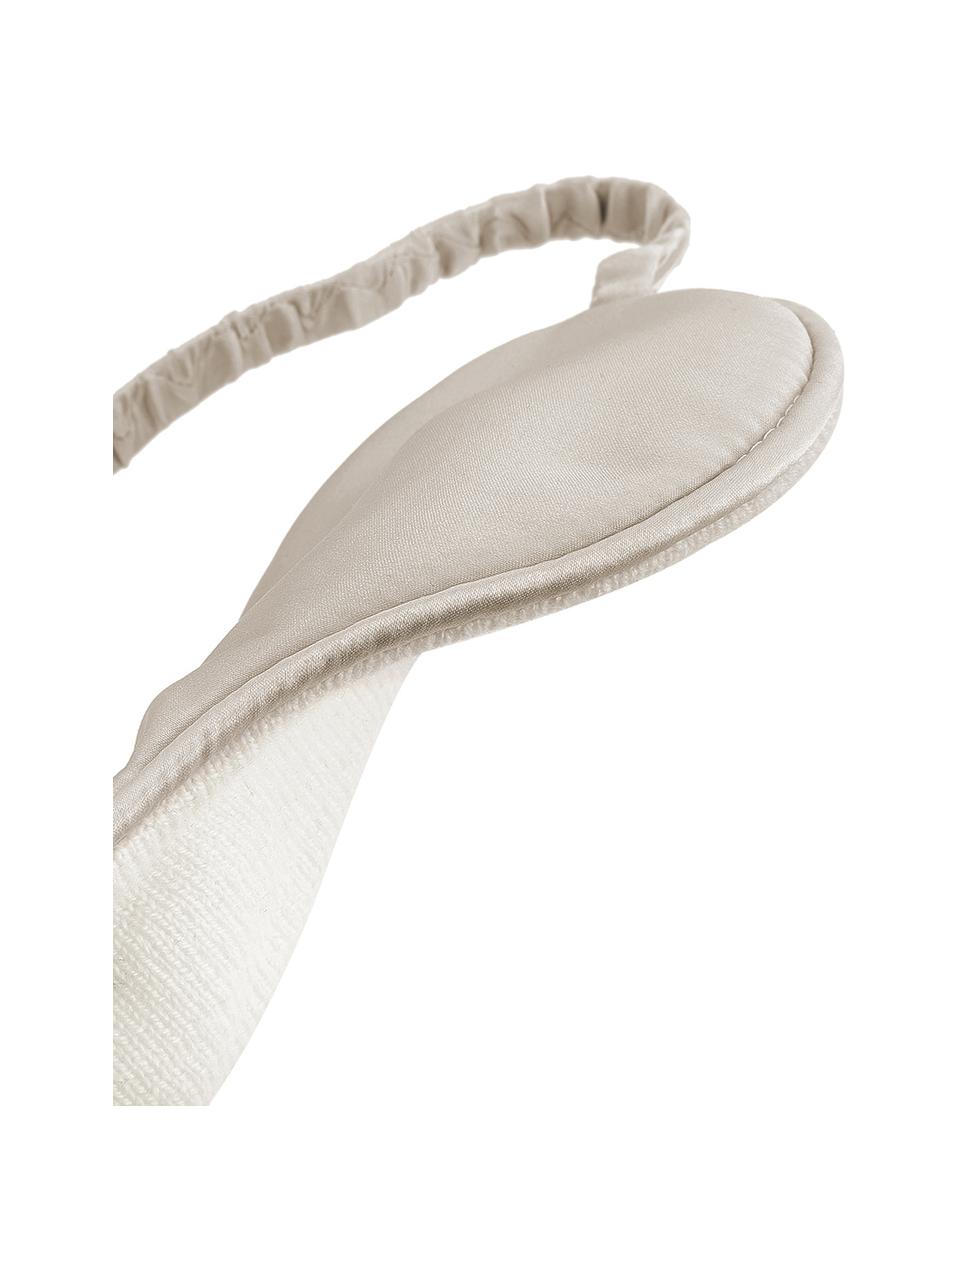 Maska do spania z jedwabiu Silke, Odcienie kości słoniowej, beżowy, S 21 x W 9 cm